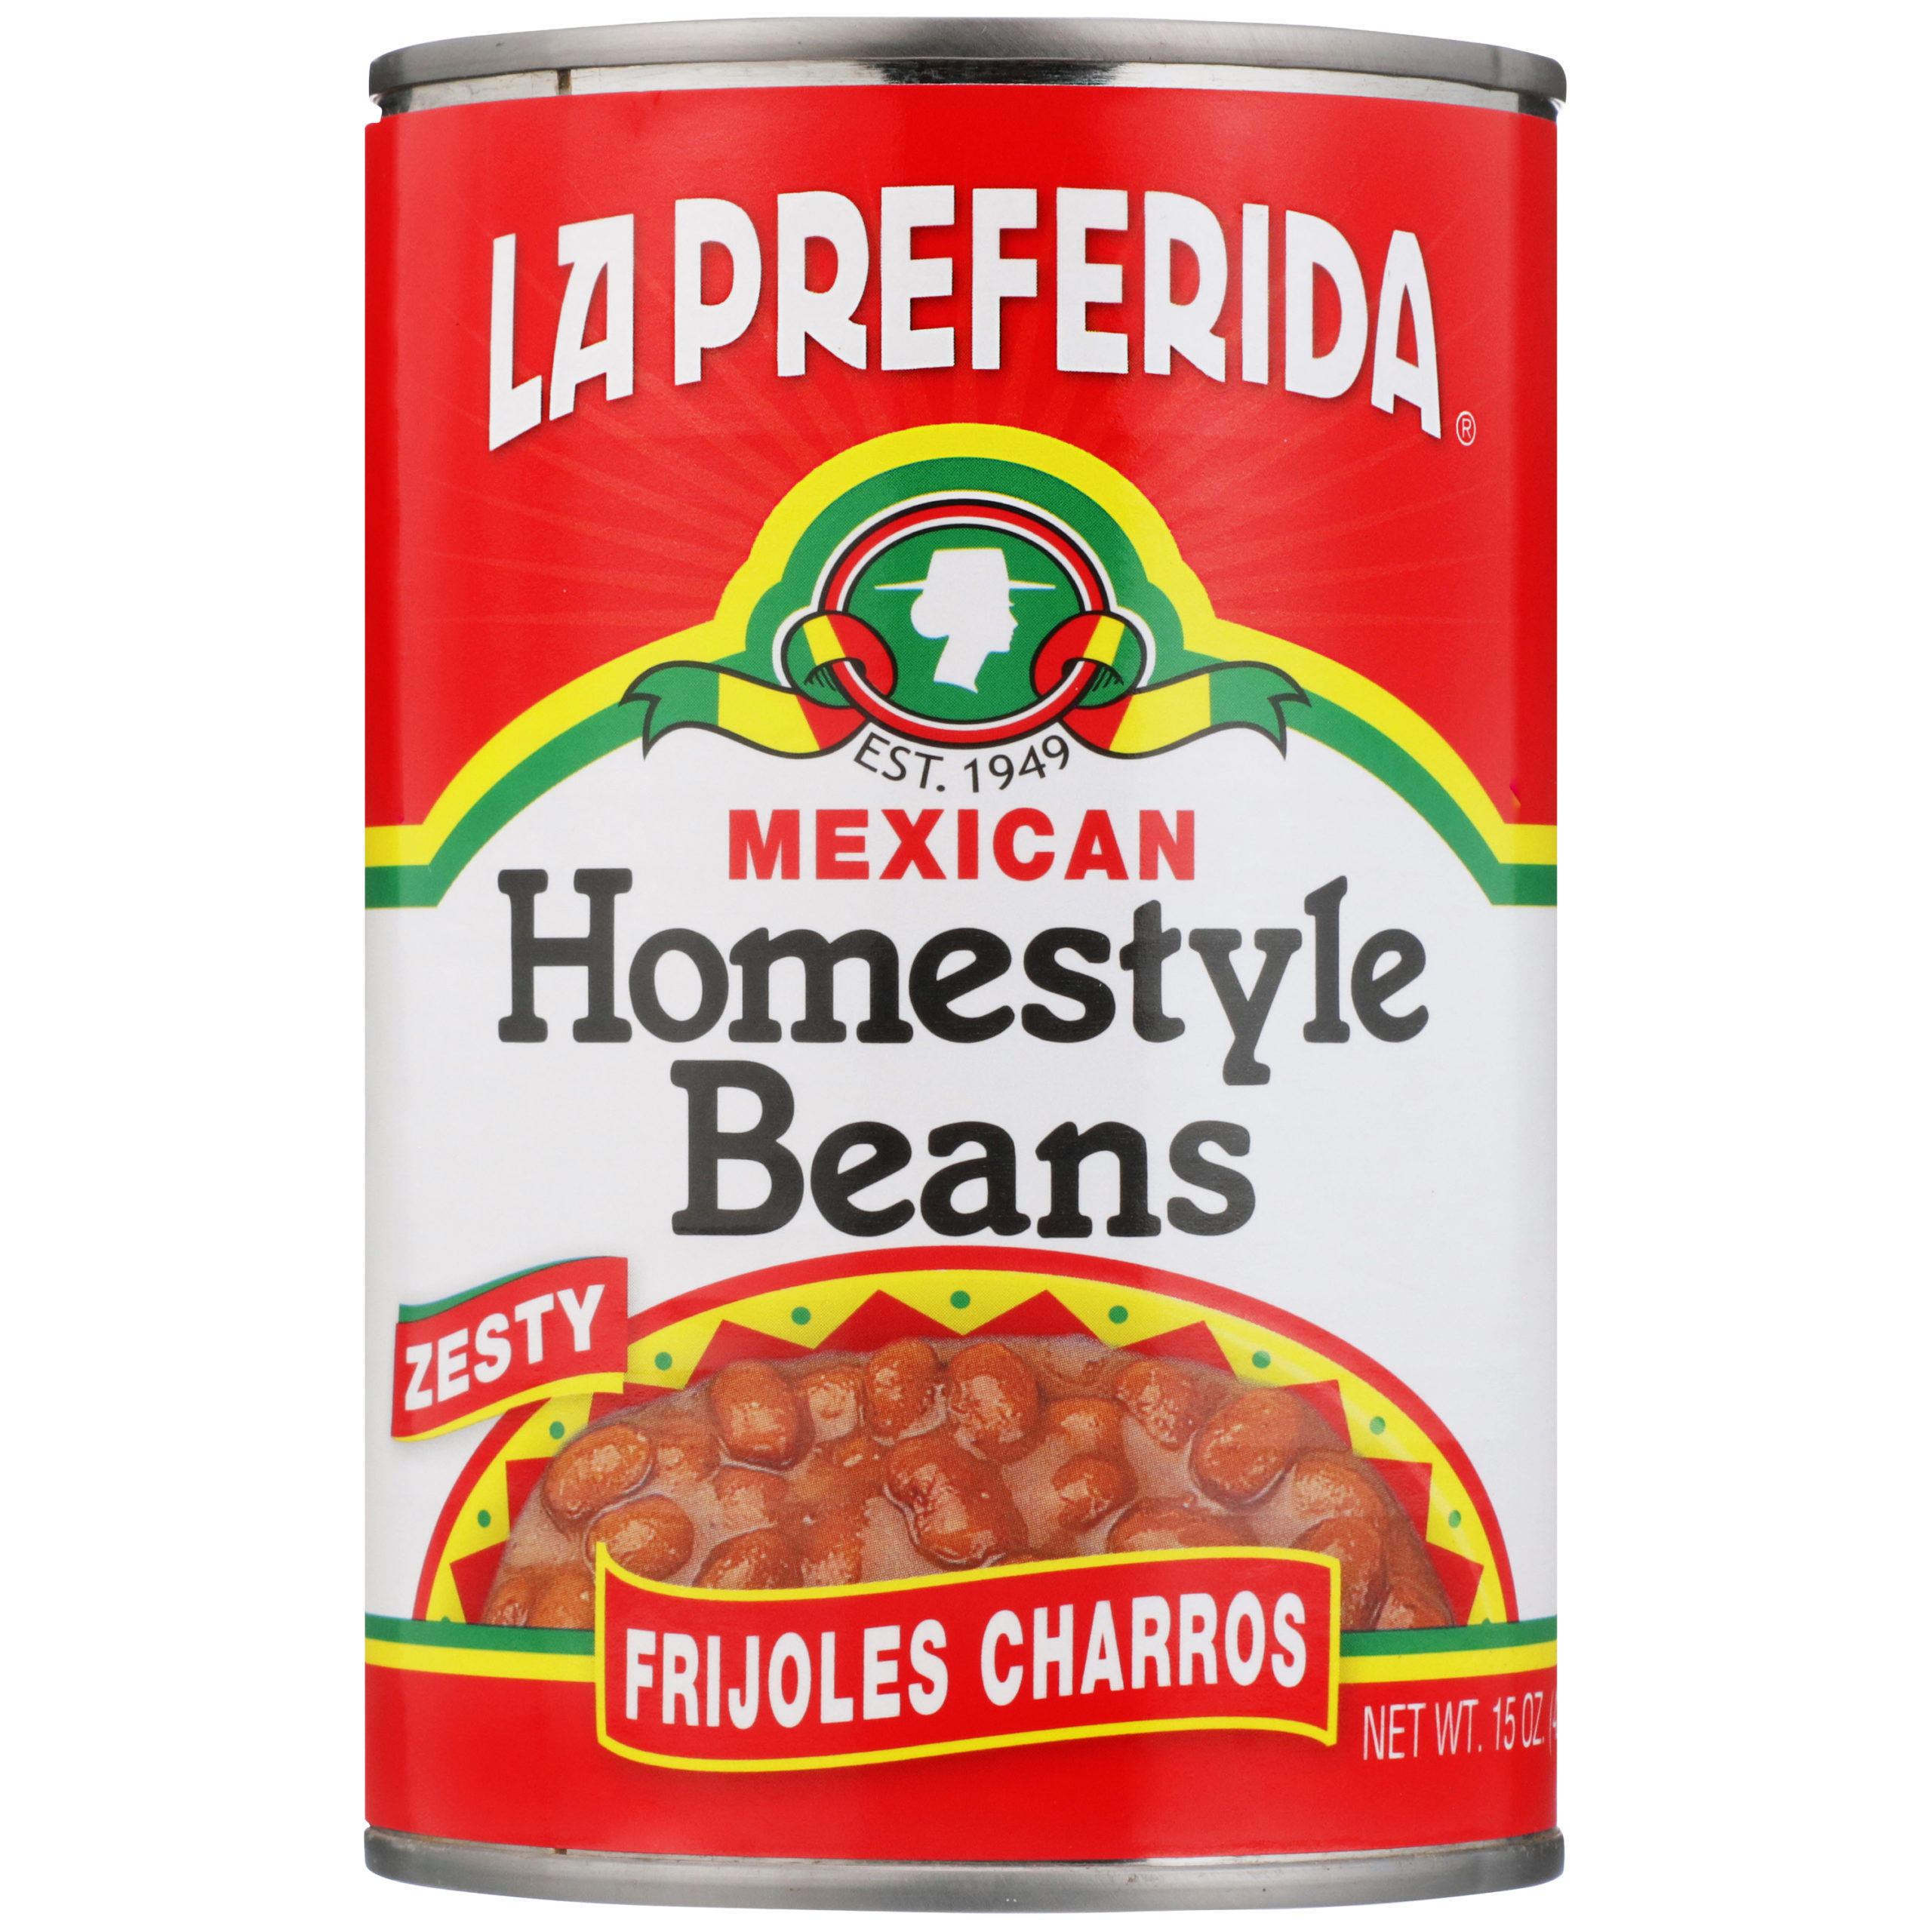 la preferida frijoles charros, la preferida charro beans, frijoles charros, charro beans, mexican beans, canned mexican beans, cowboy beans